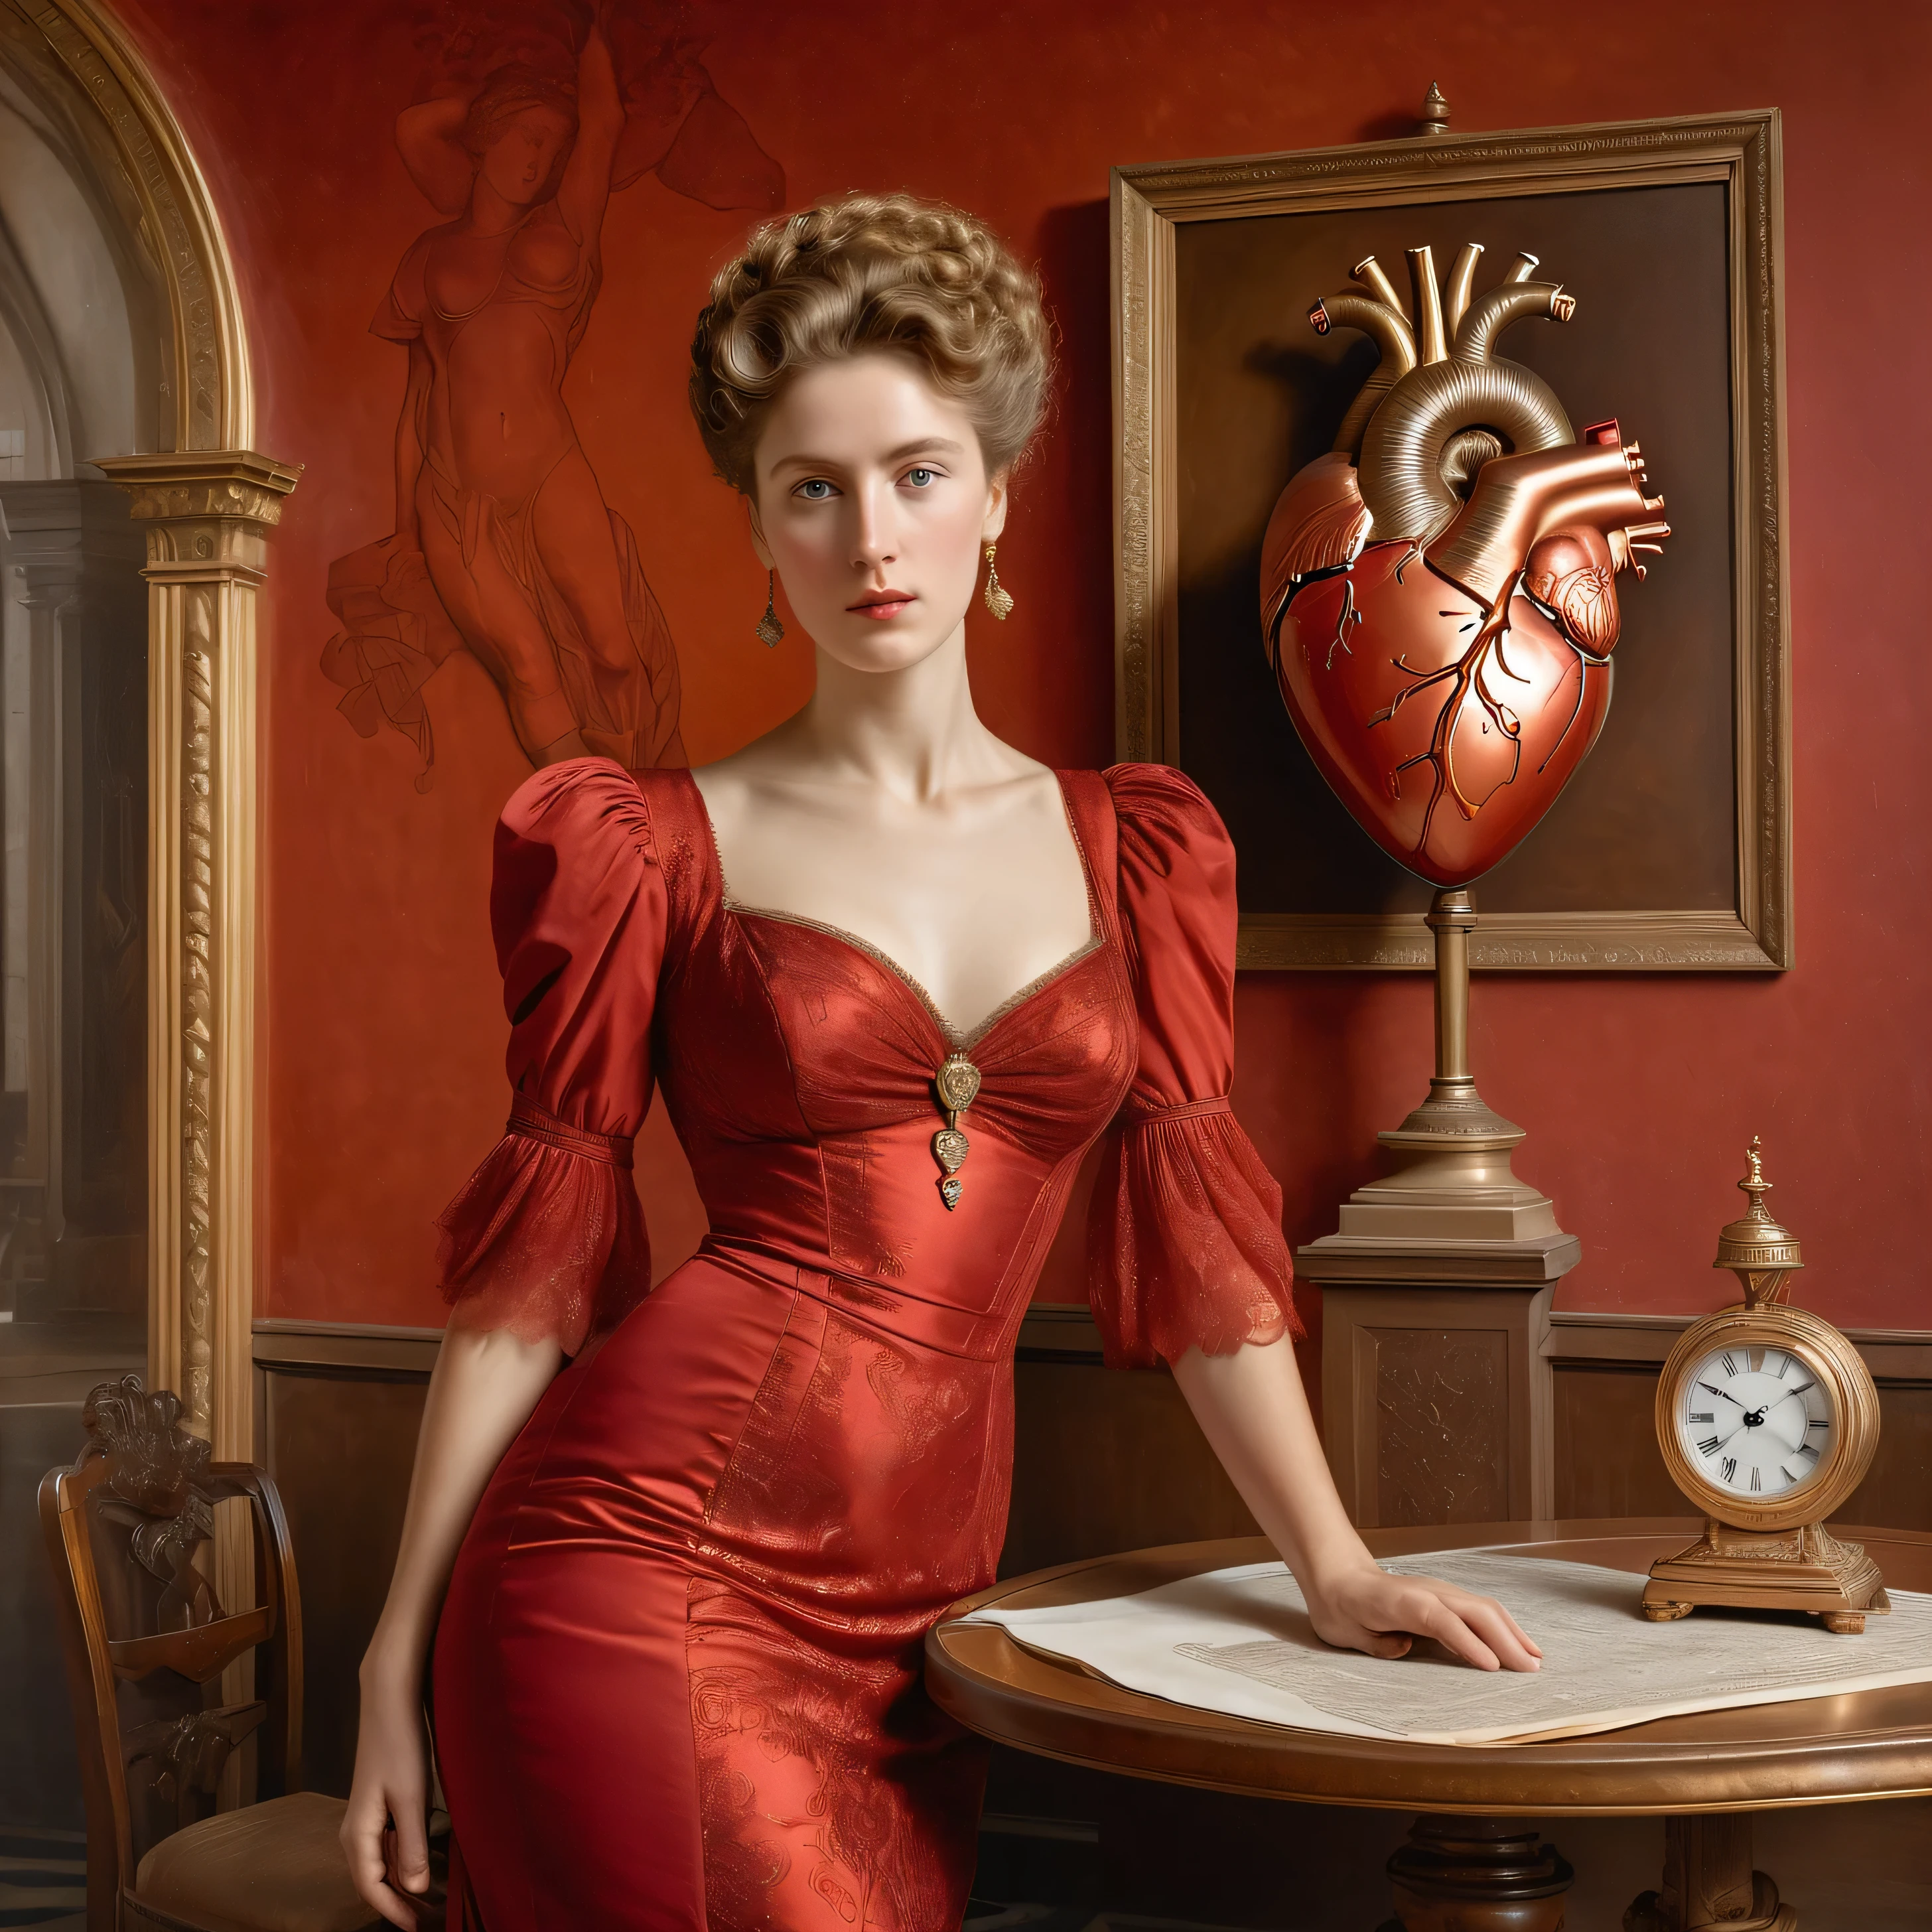 アルバート・ジョセフ・ムーアによるスタイル, 大きな古い時計の銅の振り子が光の中で輝いている, (((赤いドレスを着た女性の肖像画がテーブルの上に立っている))), ((壁に描かれた人間の心臓の解剖図)), 傑作, リアルな写真, たくさんの詳細, 完全な構成, 閉じる,